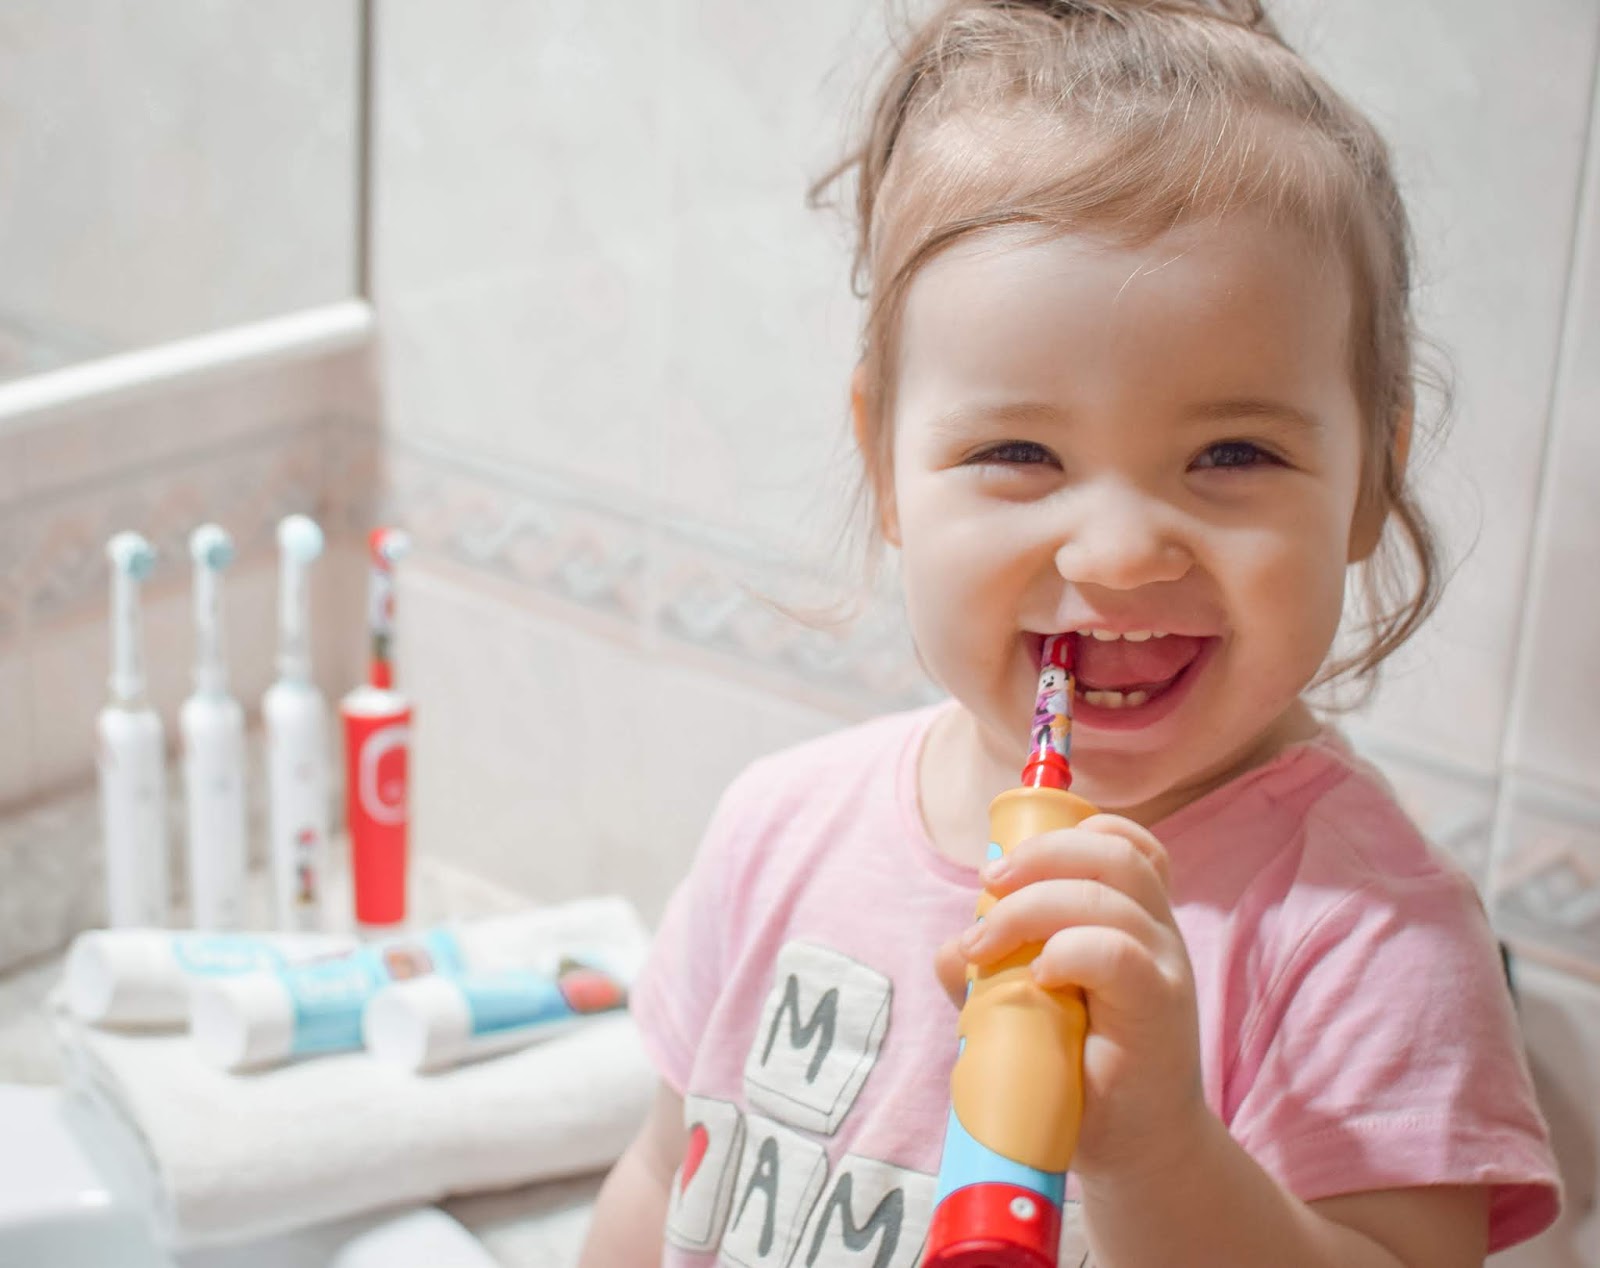 Higiene dental y los beneficios del cepillo eléctrico para niños #OralBKids — La familia lo primero